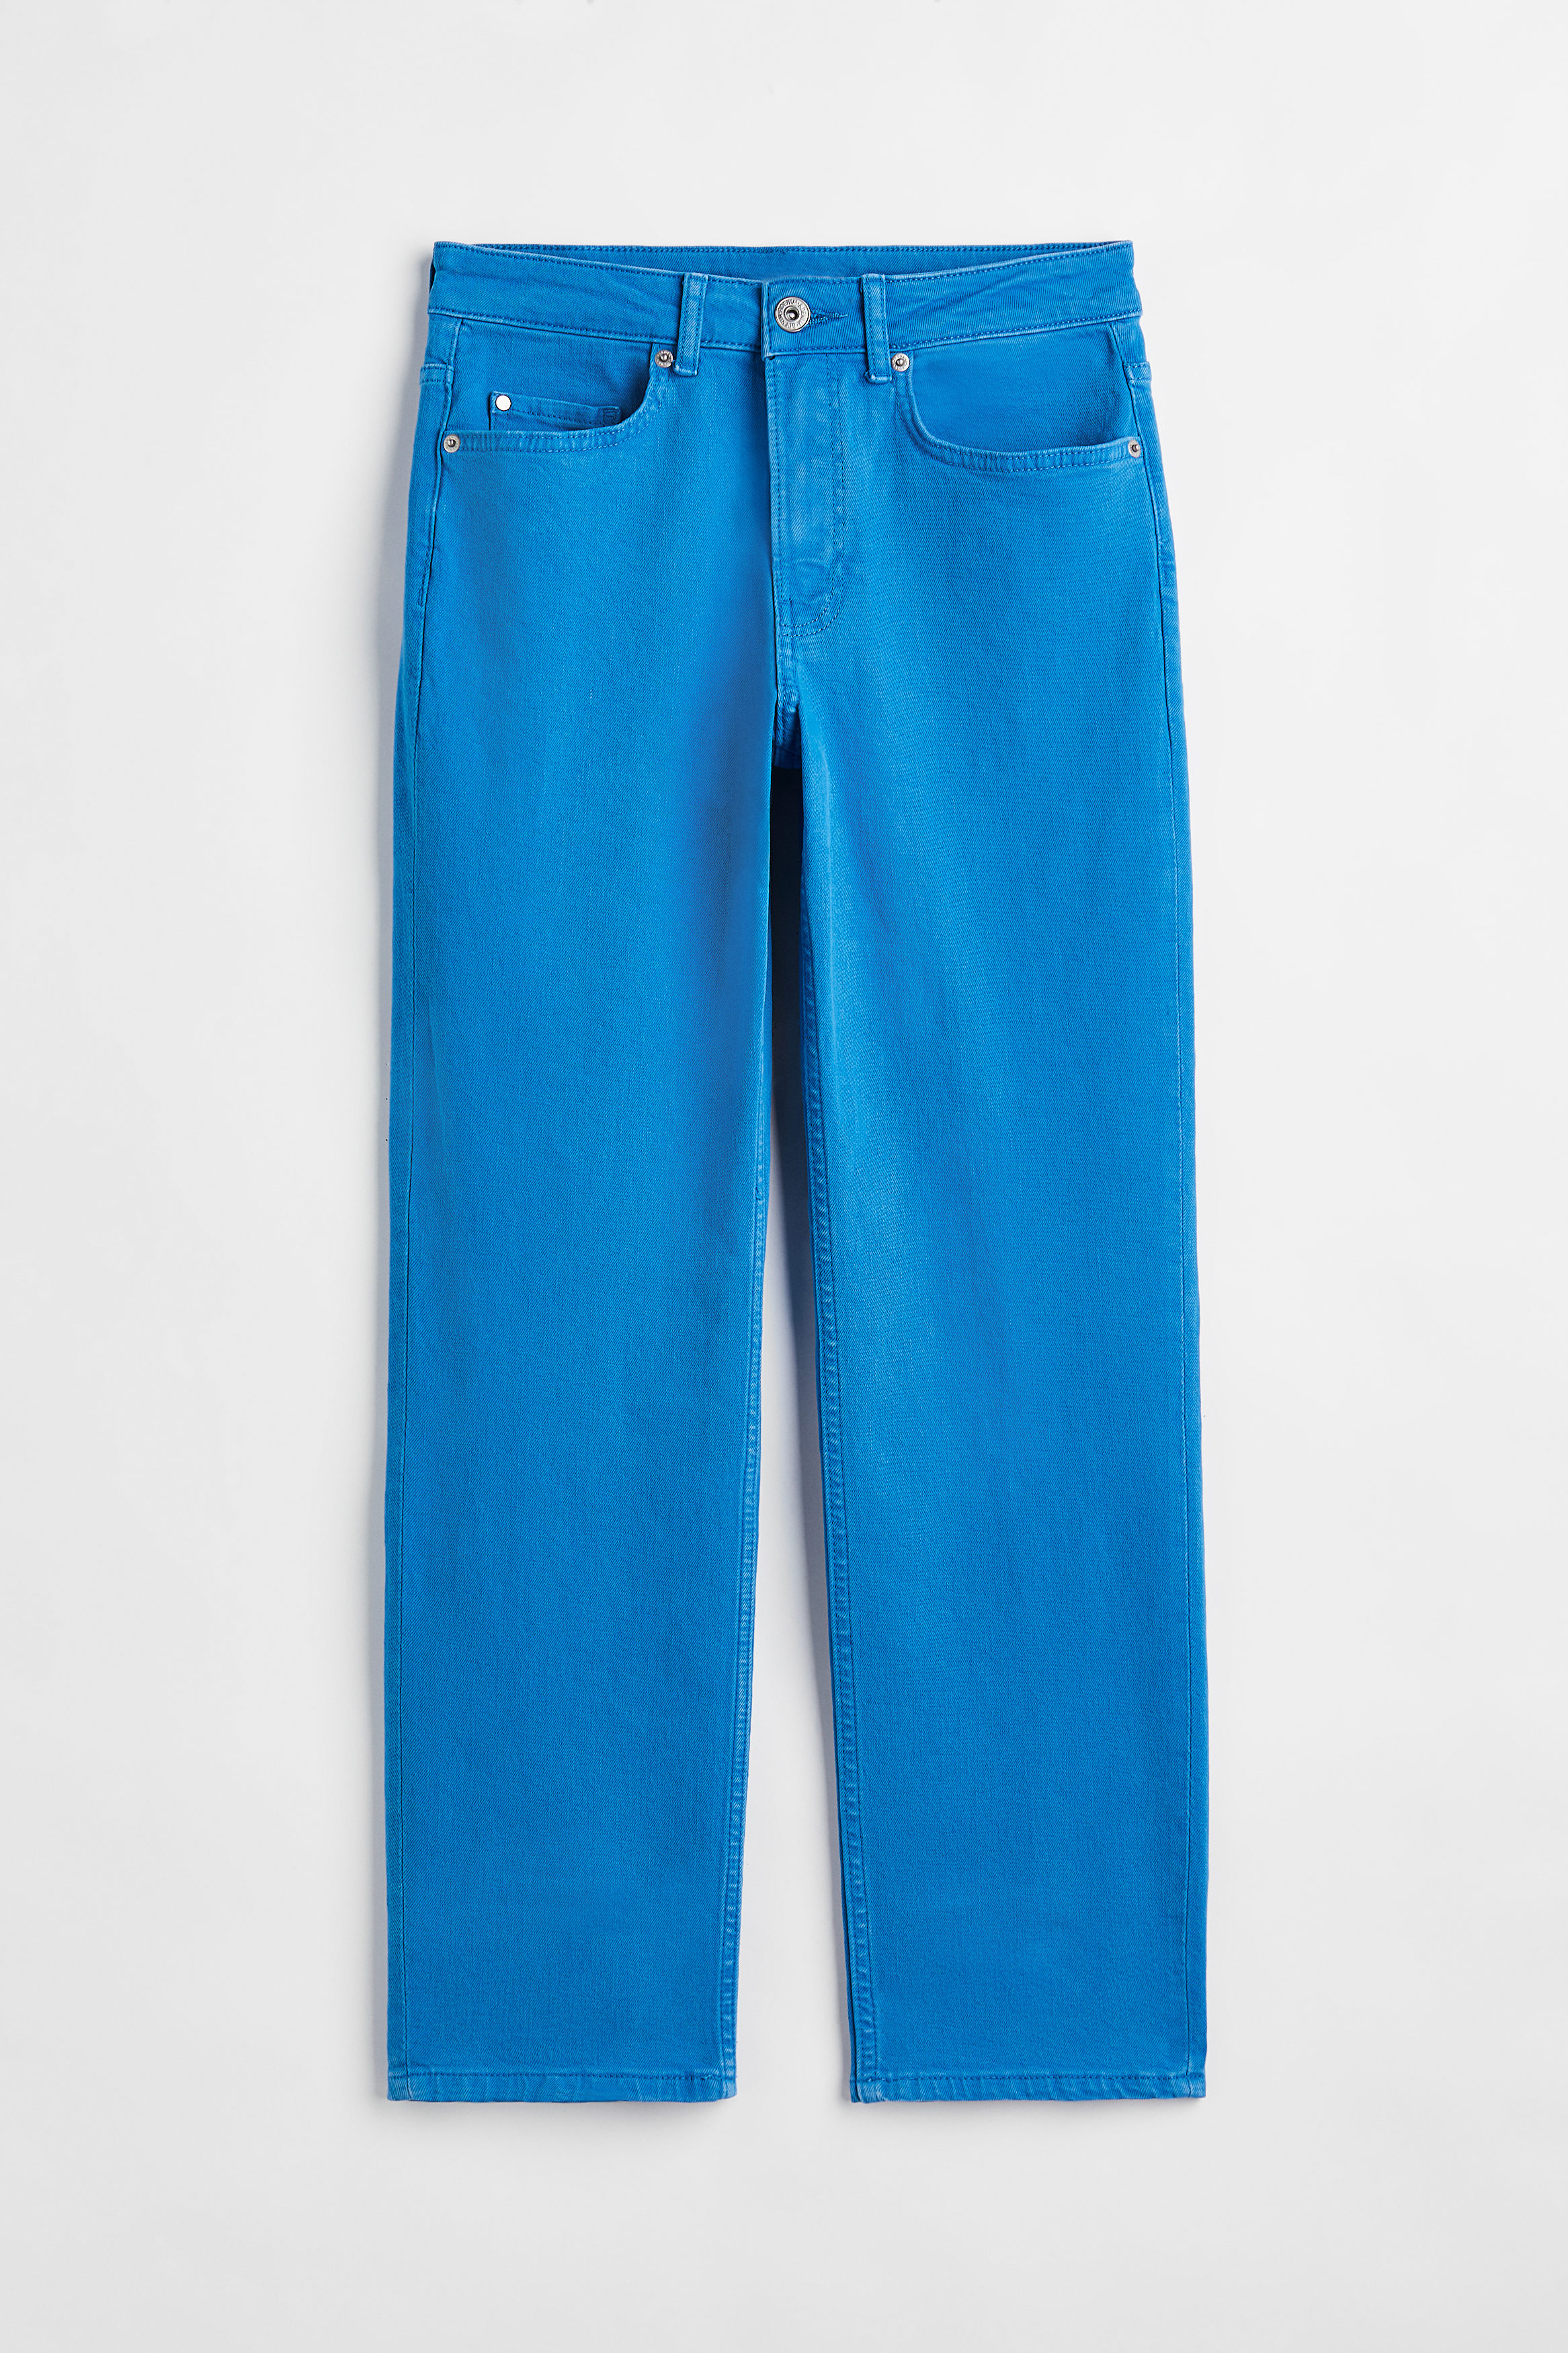 Billede af H&M Slim Regular Ankle Jeans Blå, Skinny jeans. Farve: Blue I størrelse 32